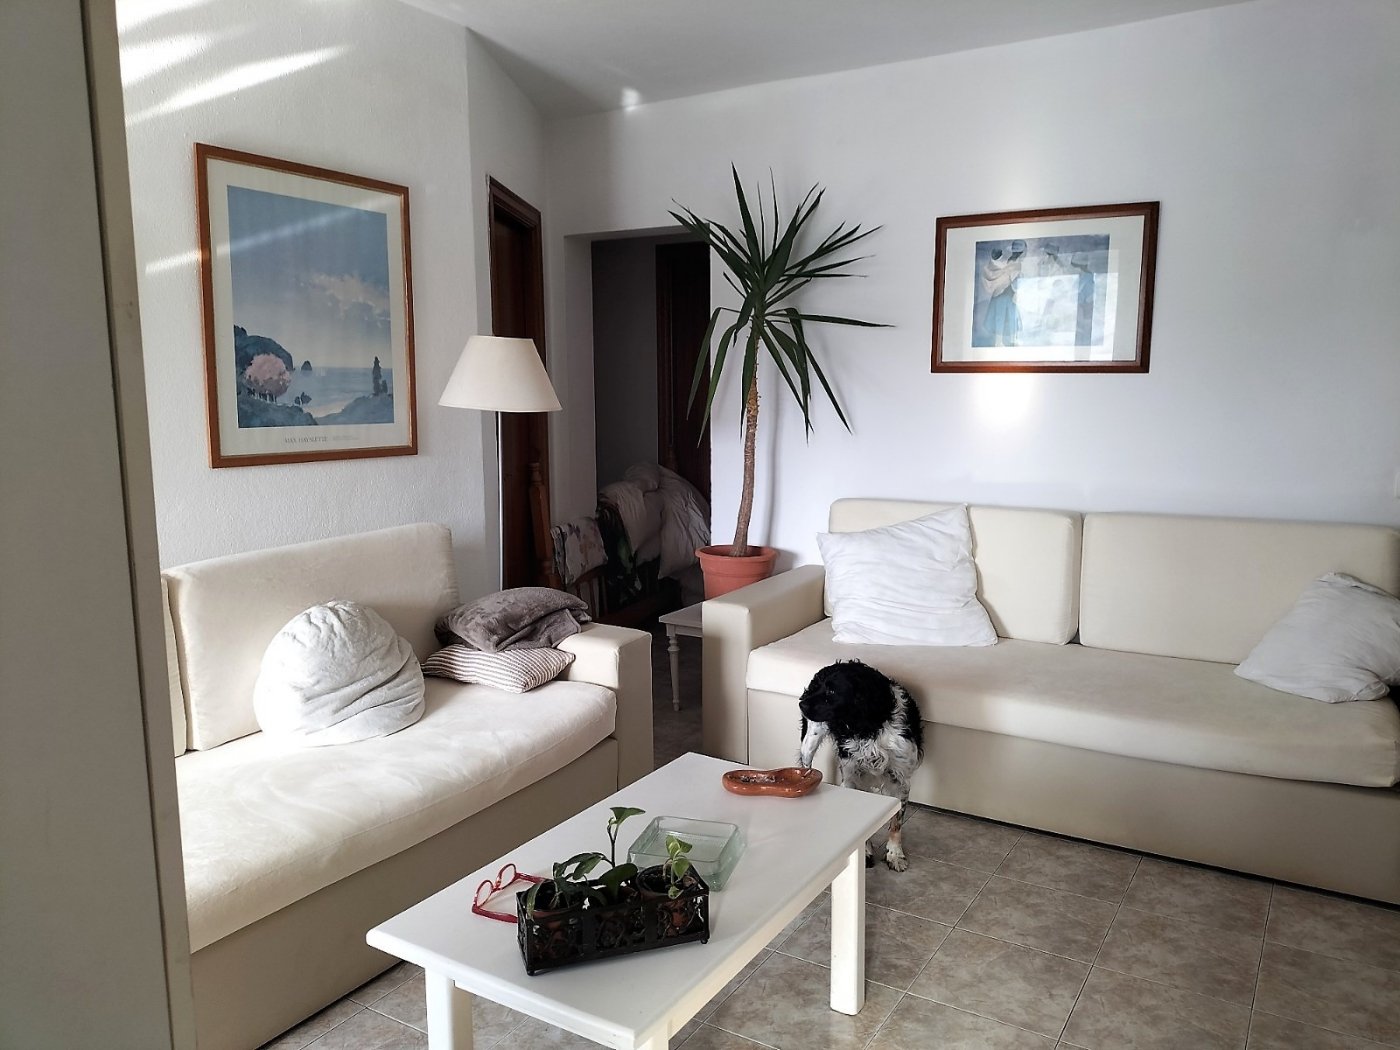 Apartamento en venta en Menorca East 3